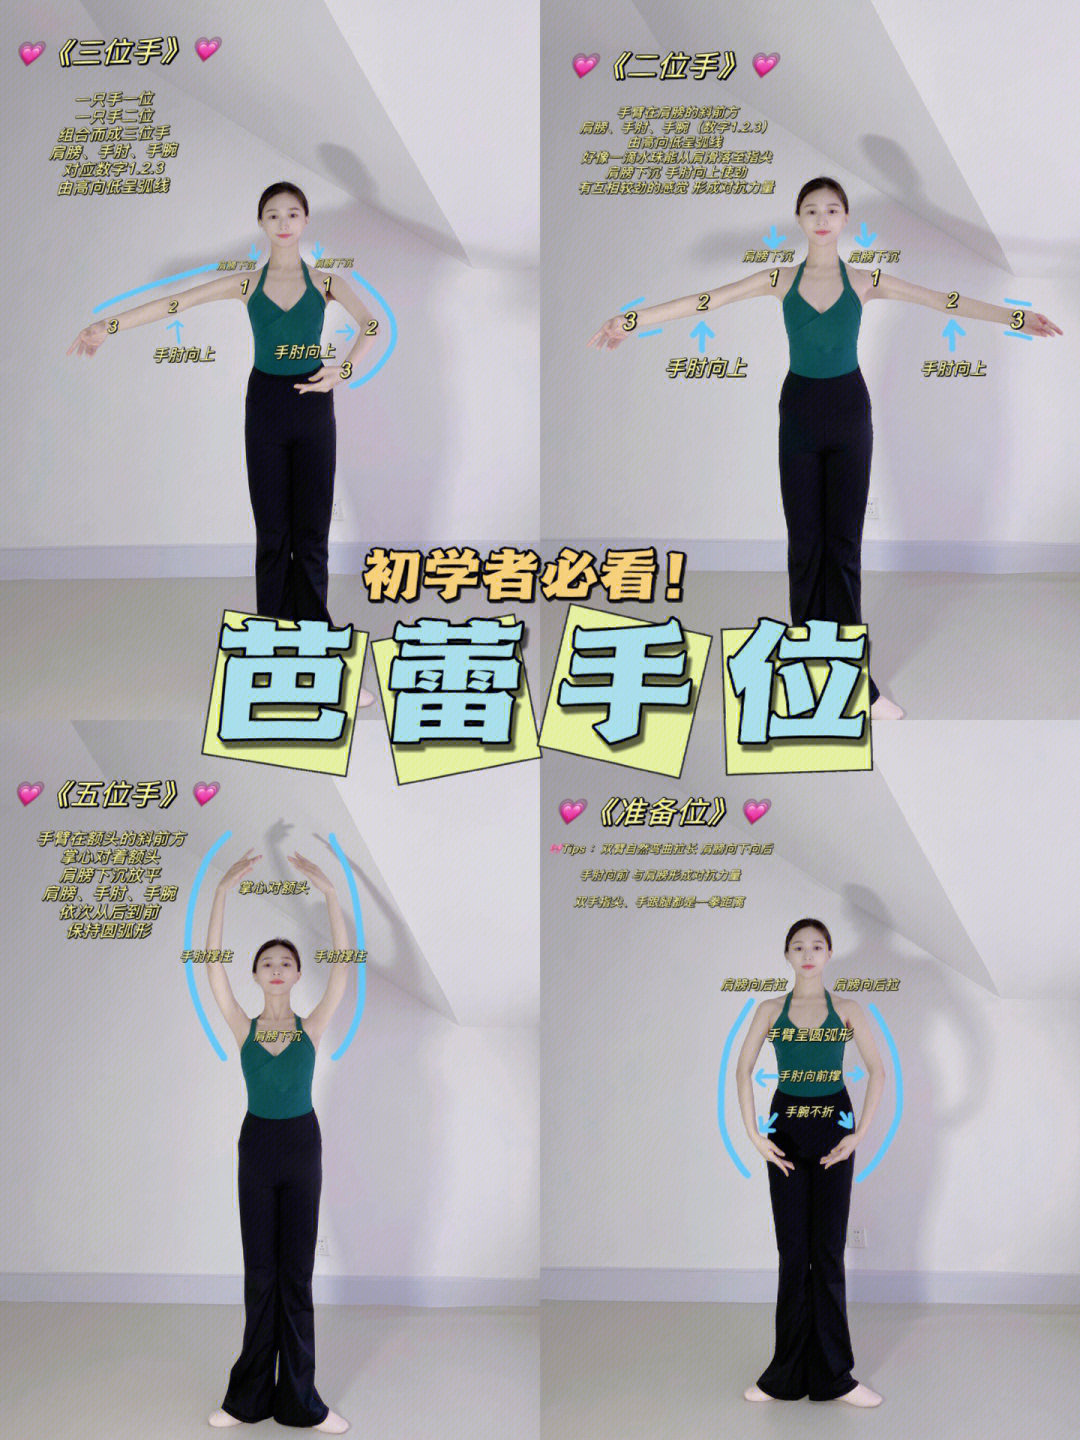 中国舞七个手位图解图片